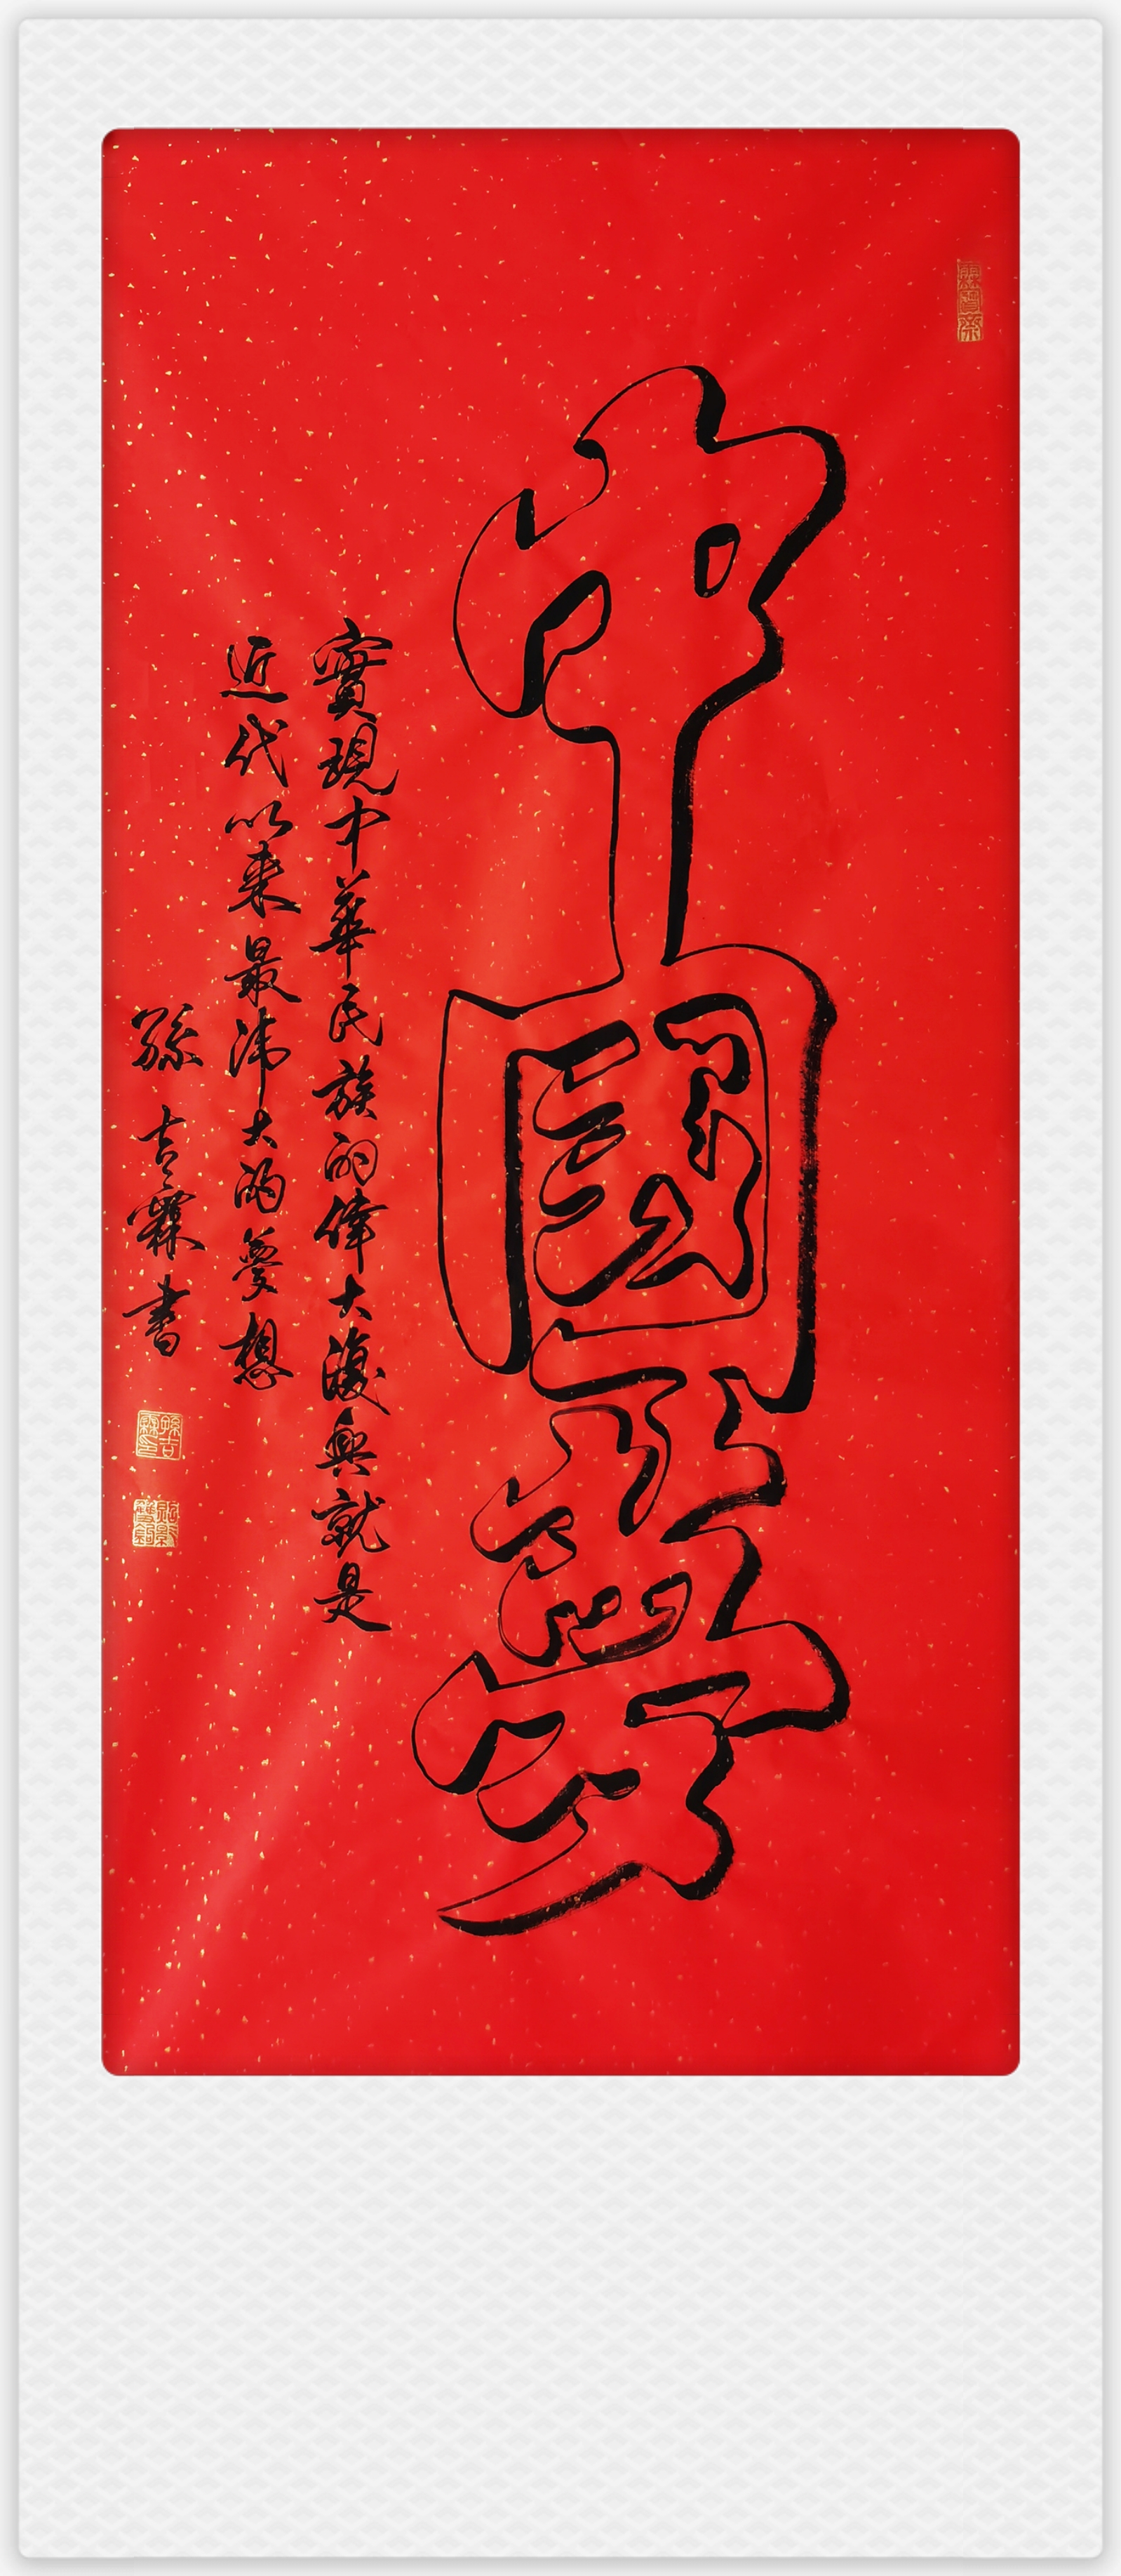 中国大众文化学会名人书画艺术发展委员会——孙吉霖